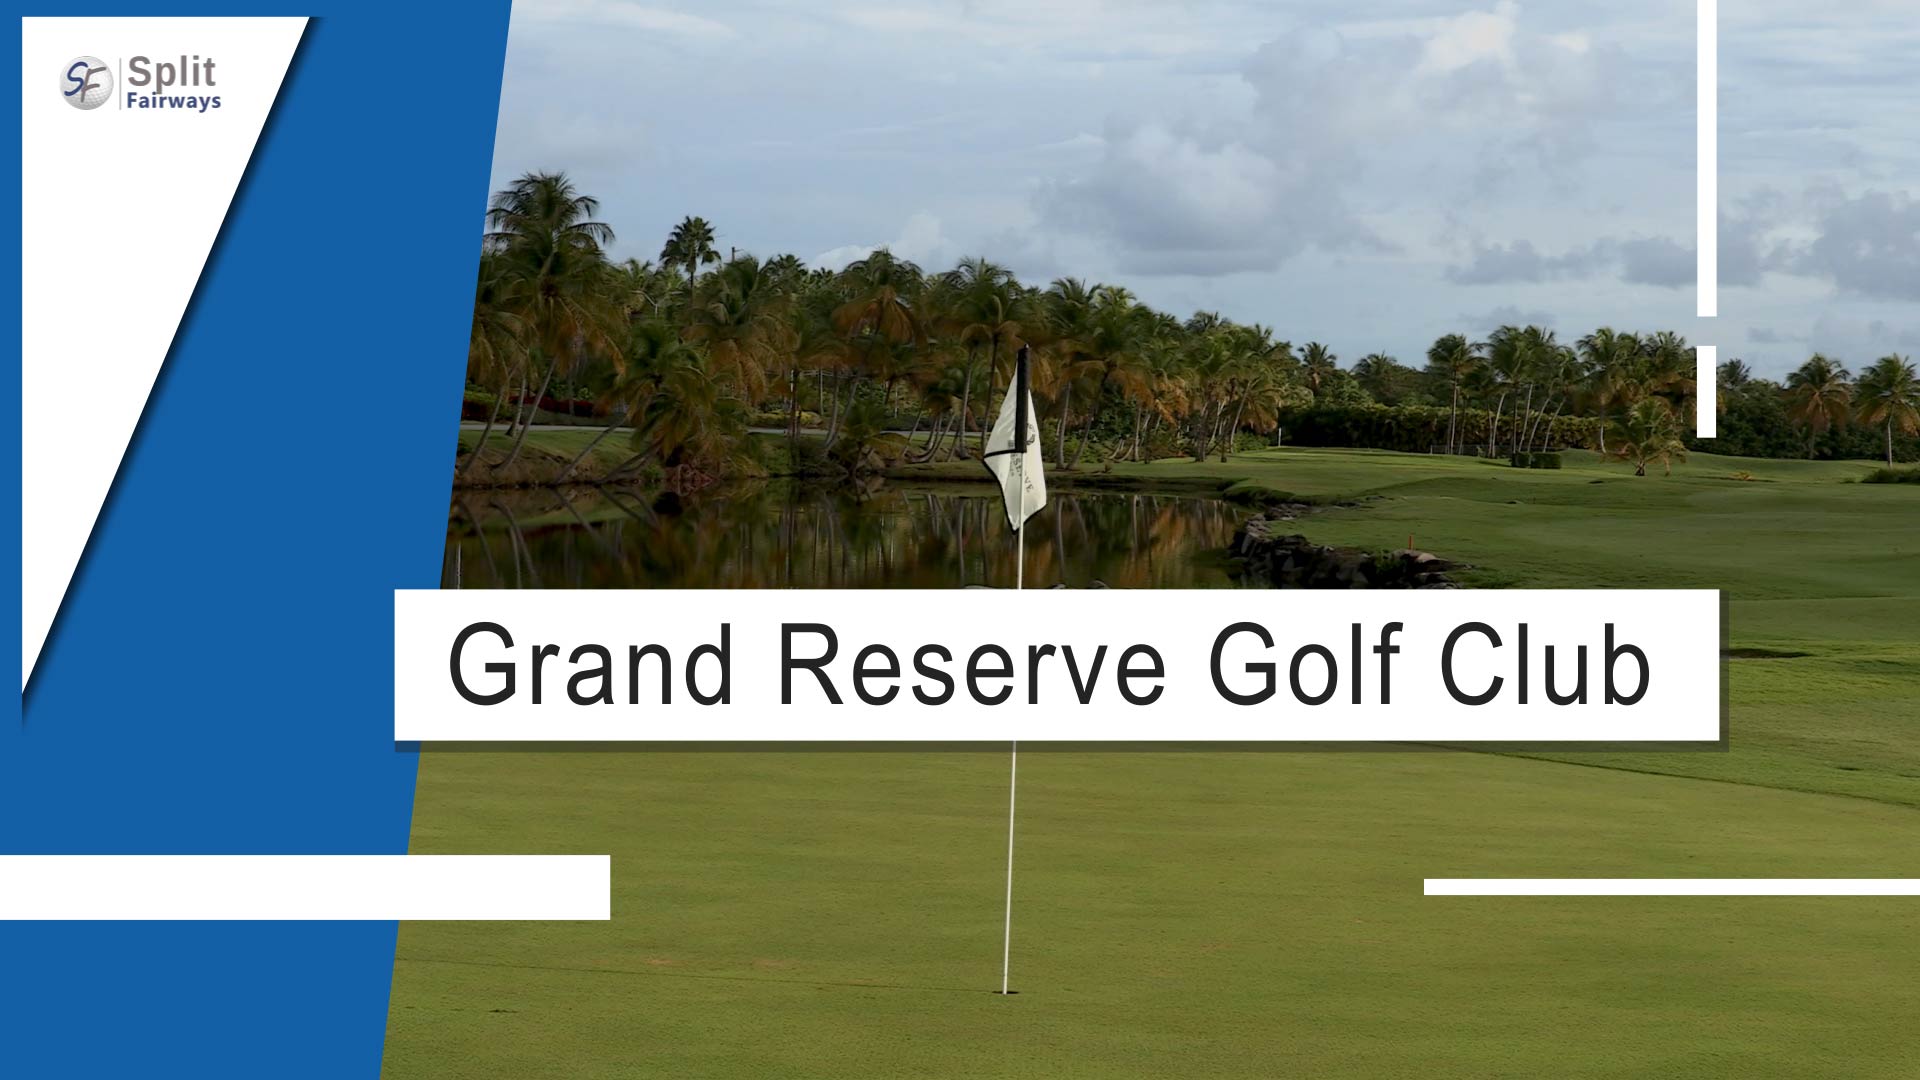 Grand Reserve Golf Club